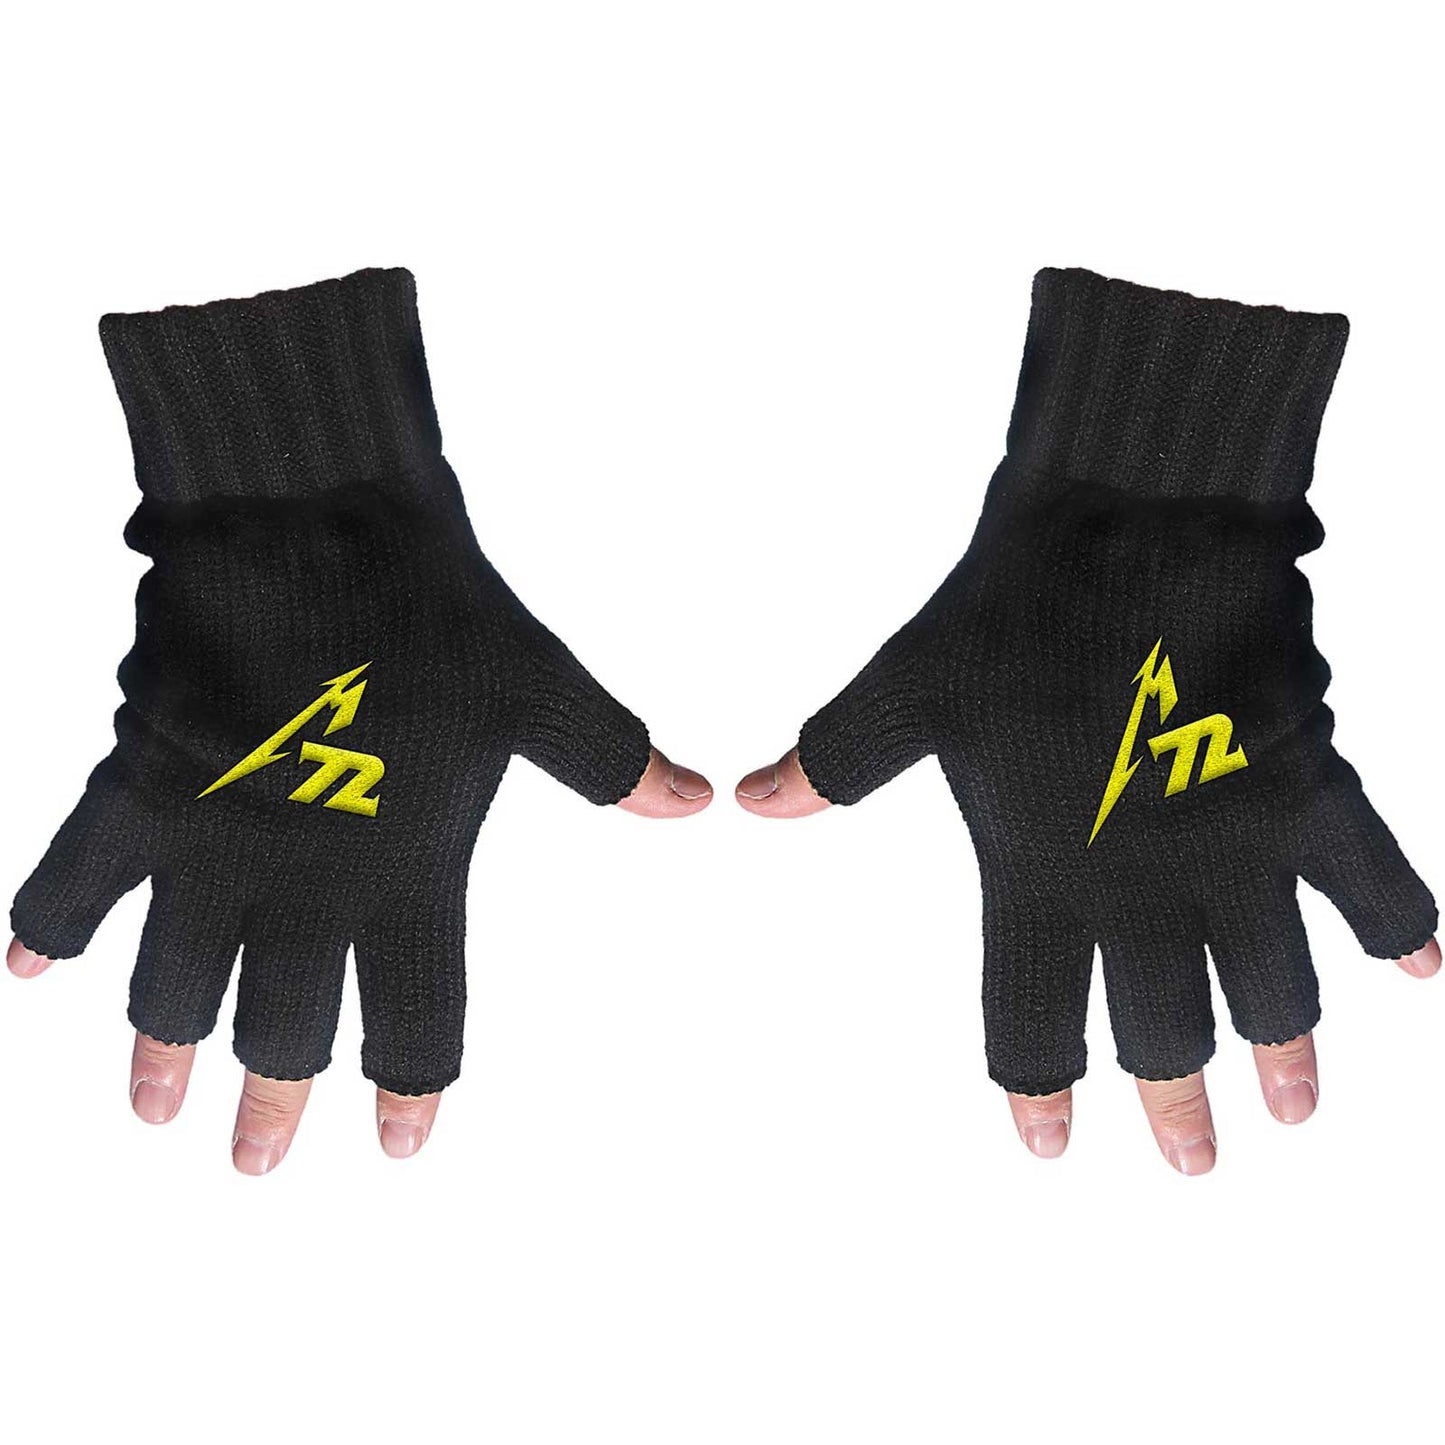 Metallica Gloves: M72